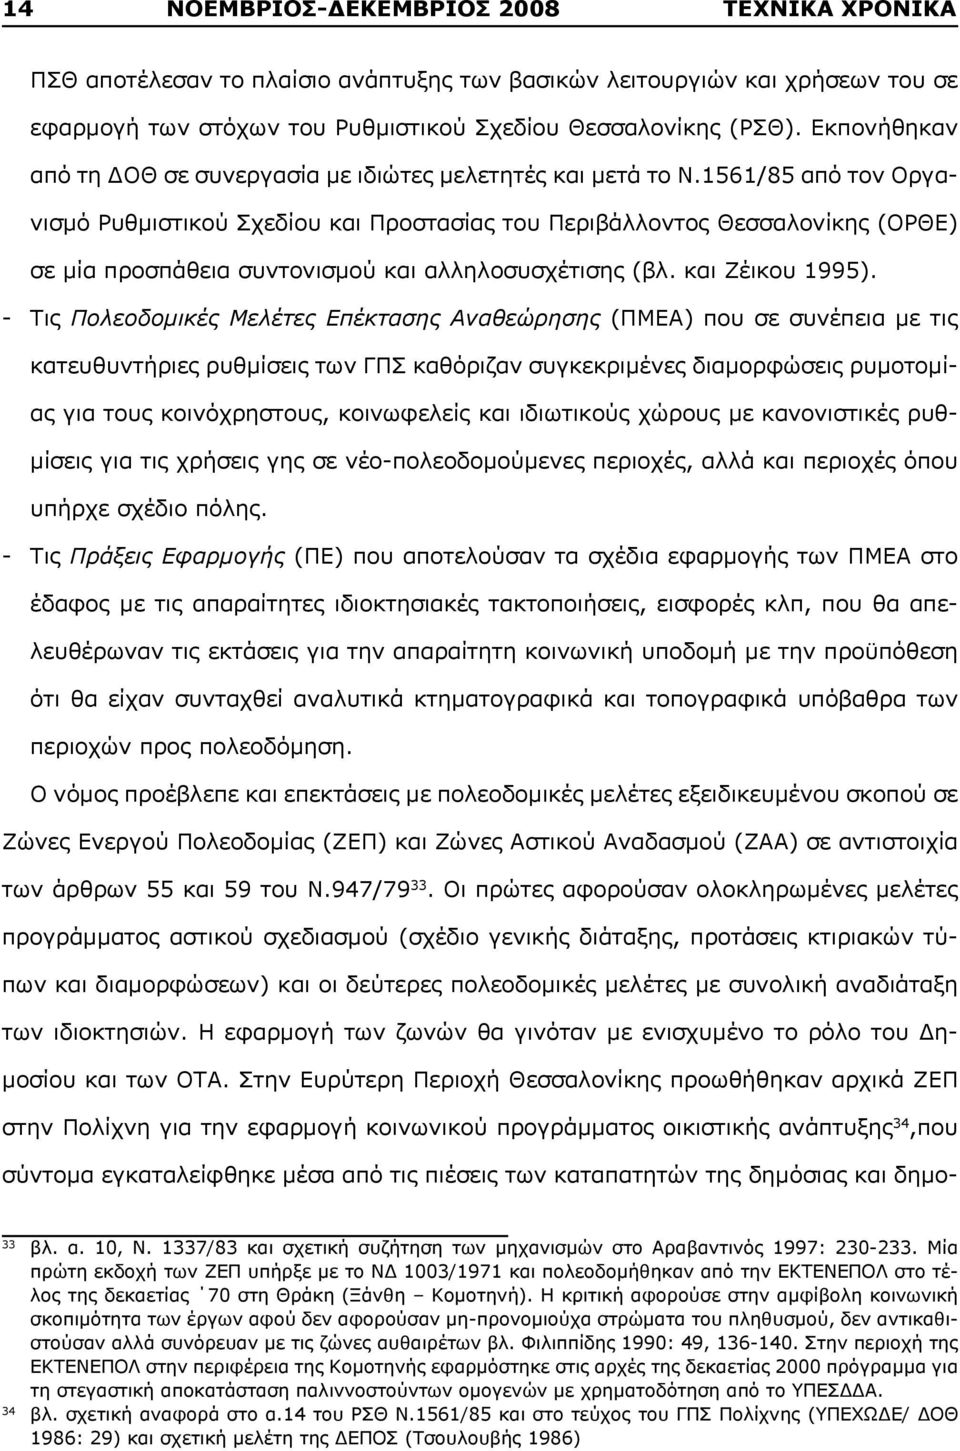 1561/85 από τον Οργανισμό Ρυθμιστικού Σχεδίου και Προστασίας του Περιβάλλοντος Θεσσαλονίκης (ΟΡΘΕ) σε μία προσπάθεια συντονισμού και αλληλοσυσχέτισης (βλ. και Ζέικου 1995).